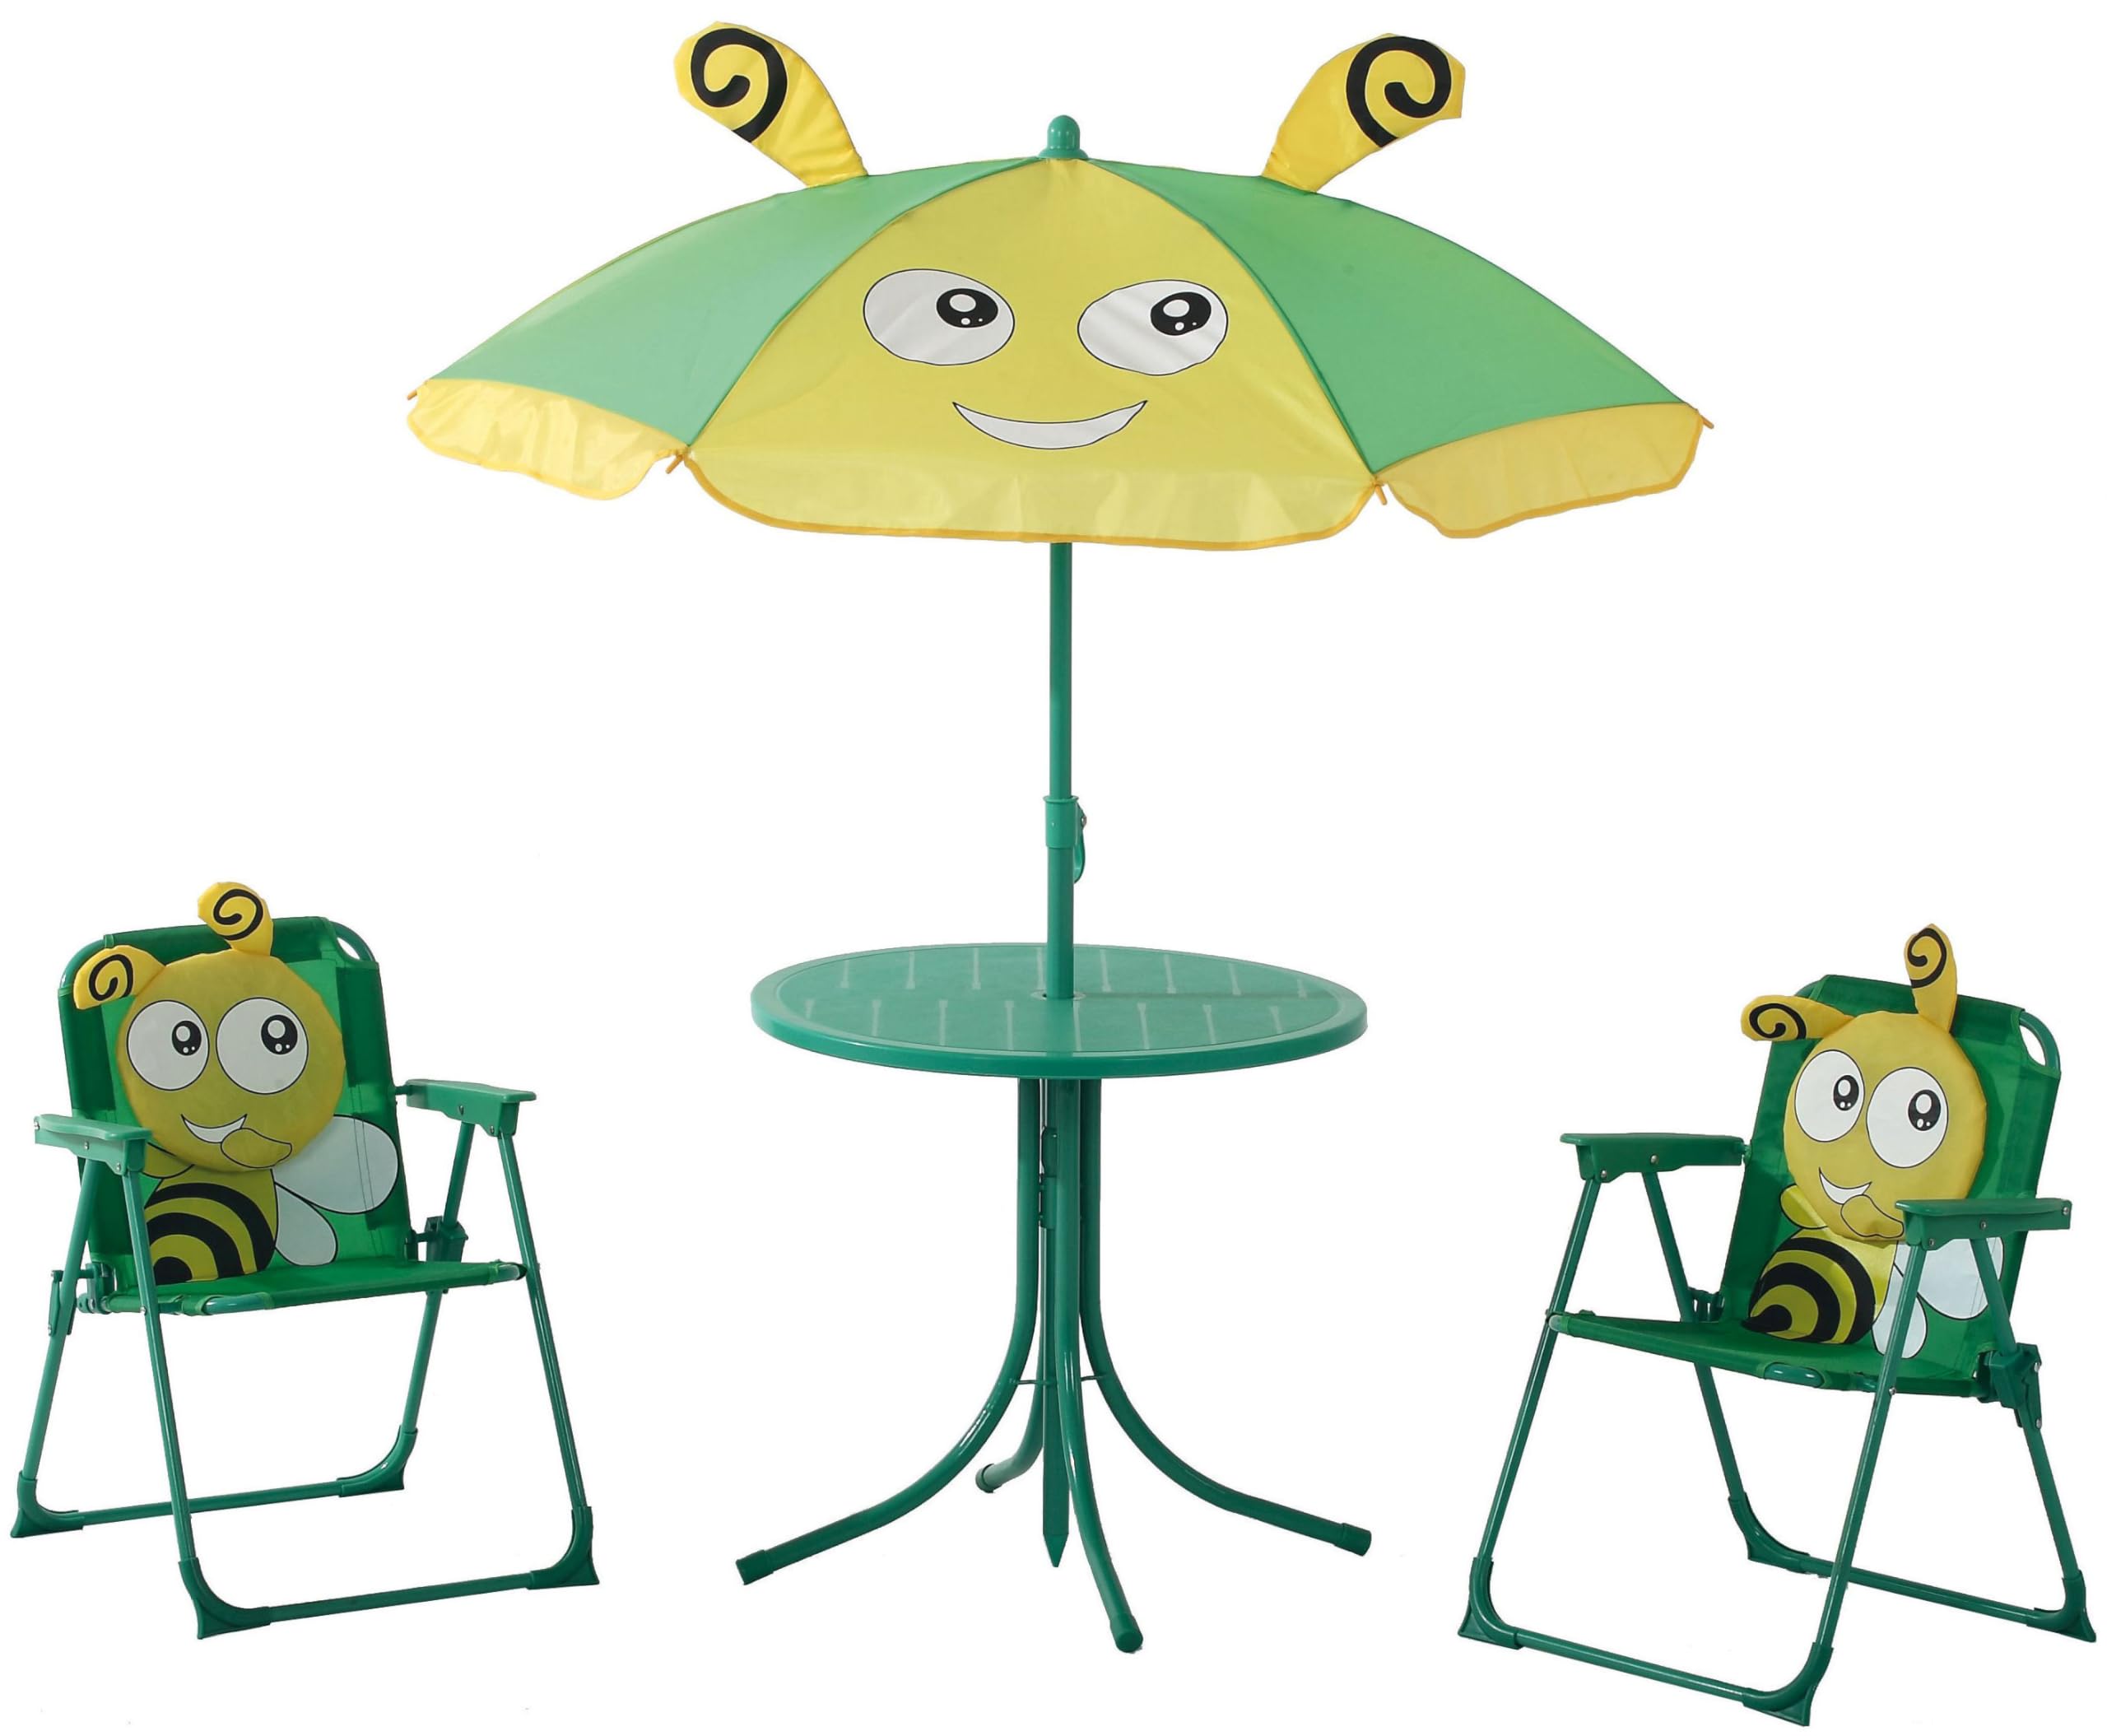 Hline Kinder Garten Sitzgruppe Biene mit Sonnenschirm 2 Klappstühle Tisch